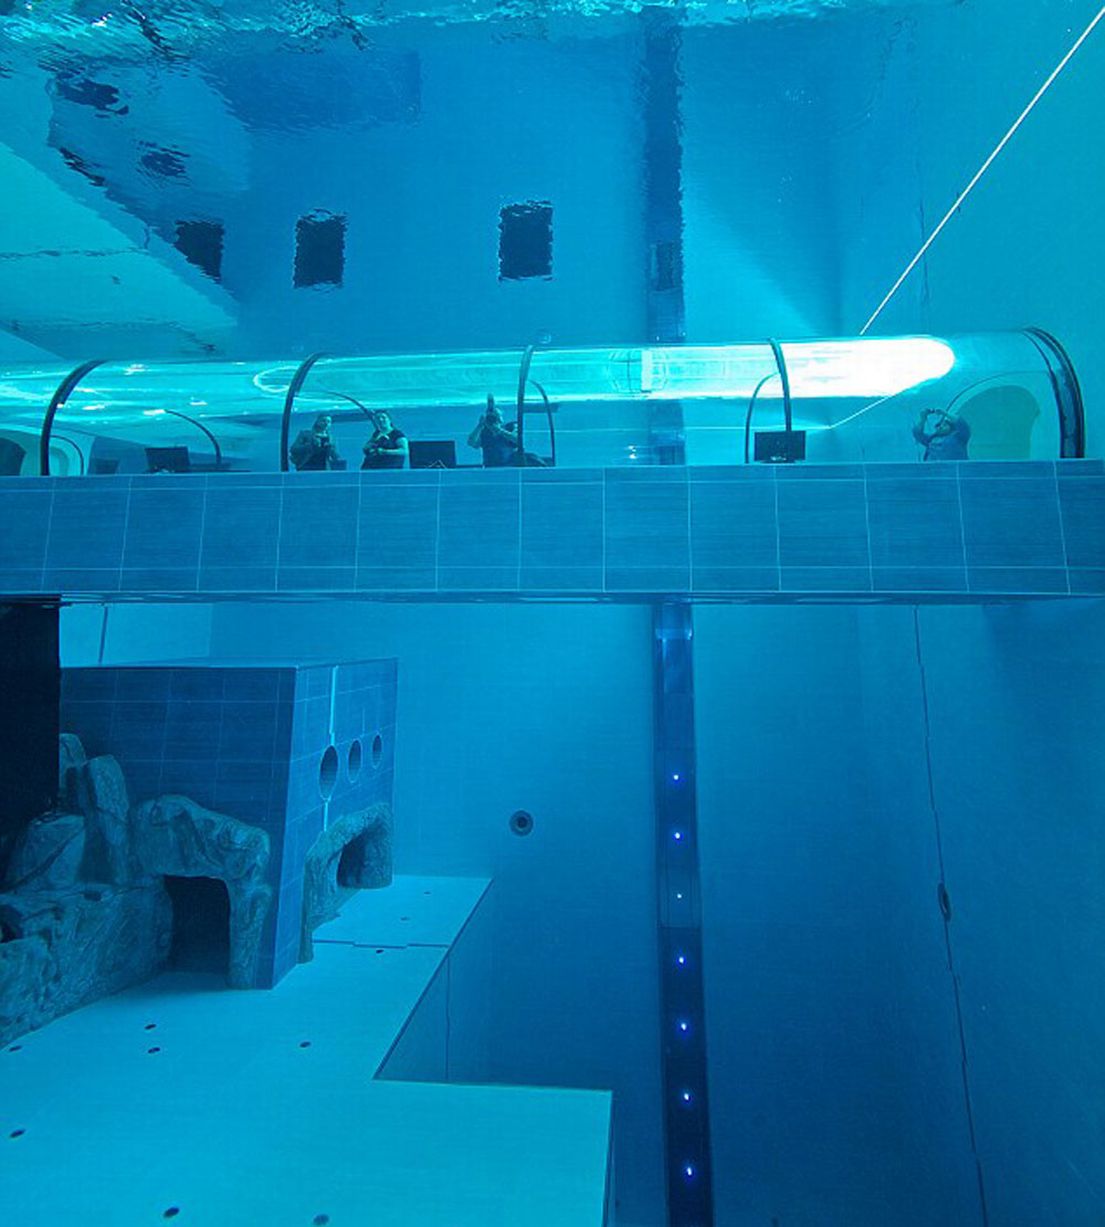 La piscina más profunda del mundo tiene 14 pisos (Fotos + Video)